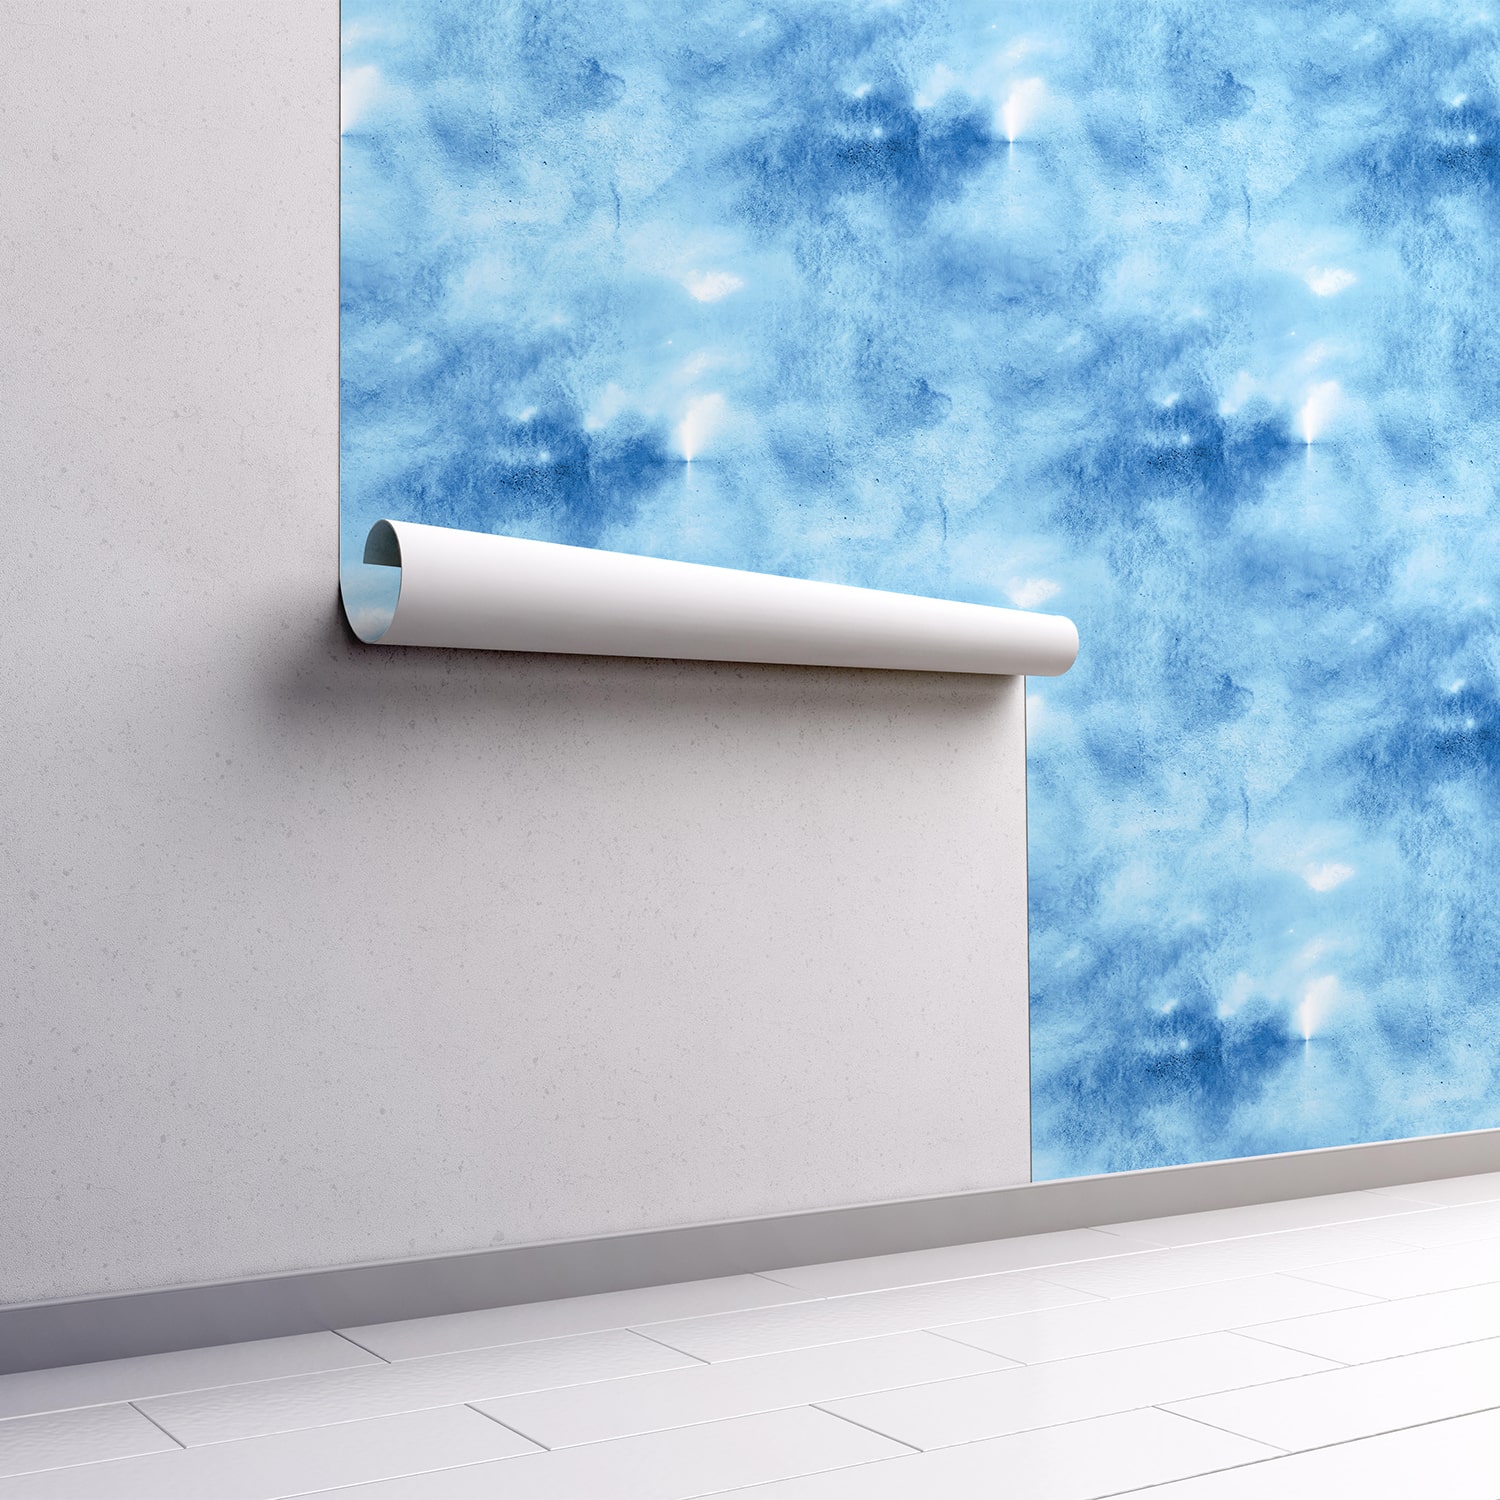 PP67-mur.rouleau-papier-peint-adhesif-decoratif-revetement-vinyle-motifs-aquarelle-dégradé-bleu-renovation-meuble-mur-min